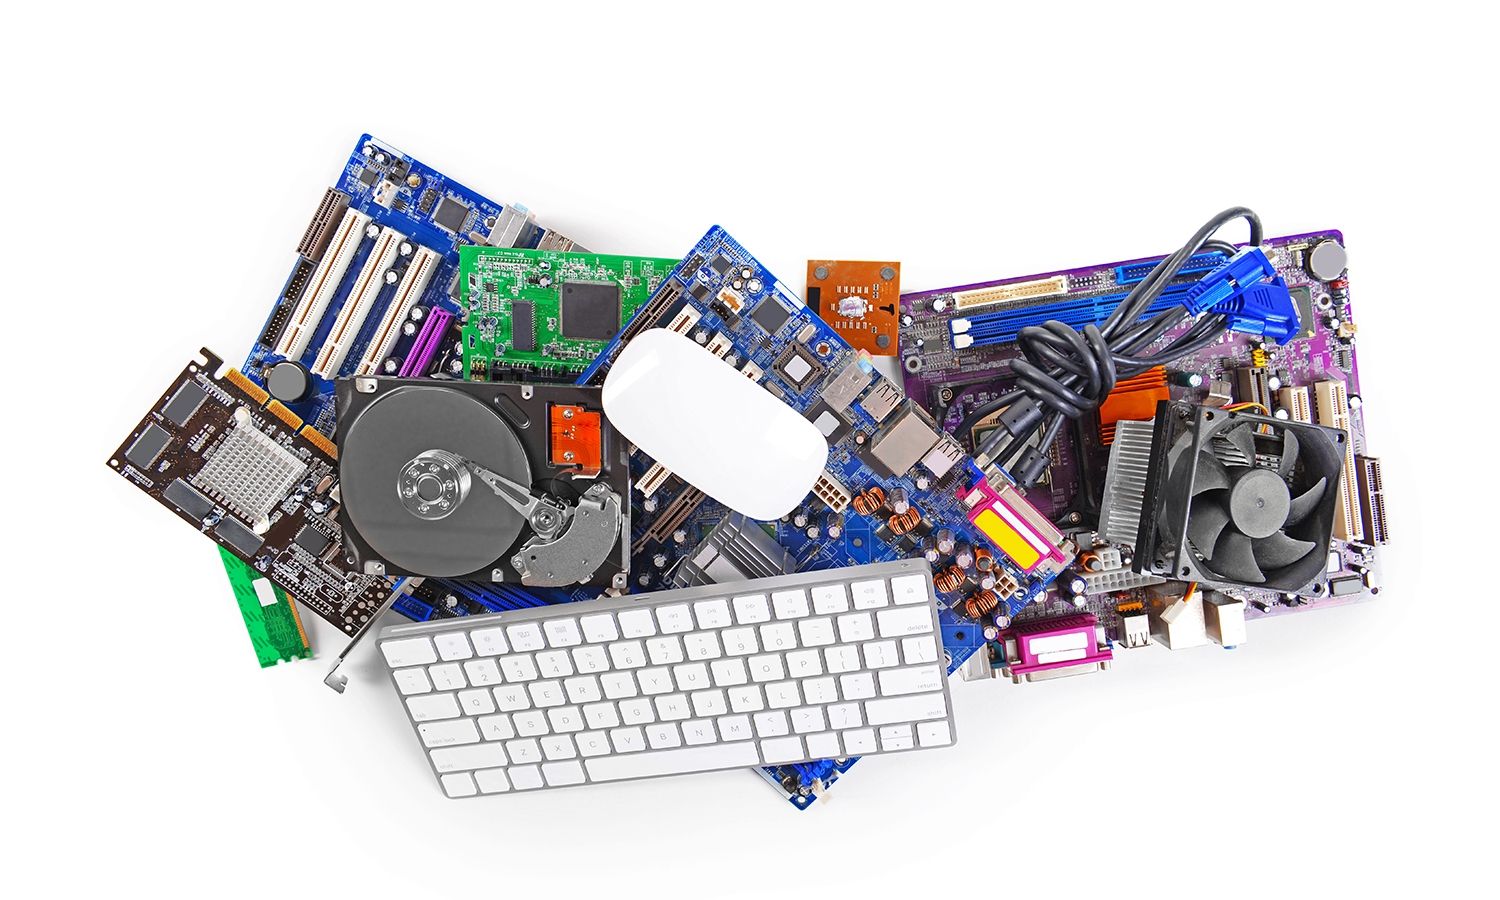 Collection de matériel informatique, comprenant une souris et un clavier